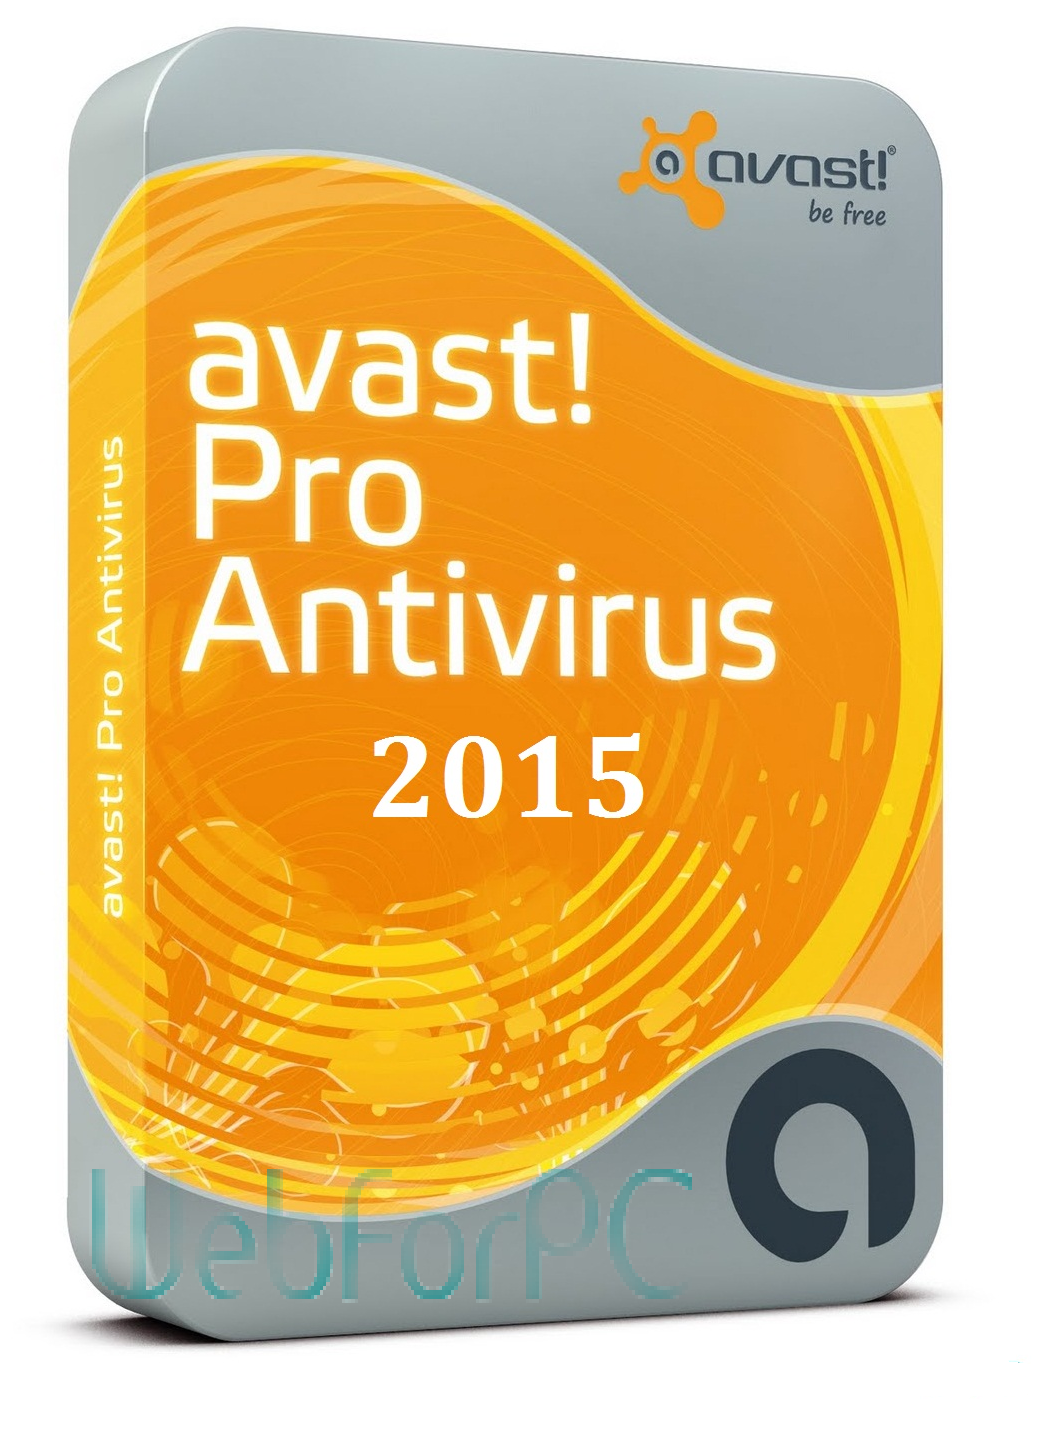 renew my free avast antivirus